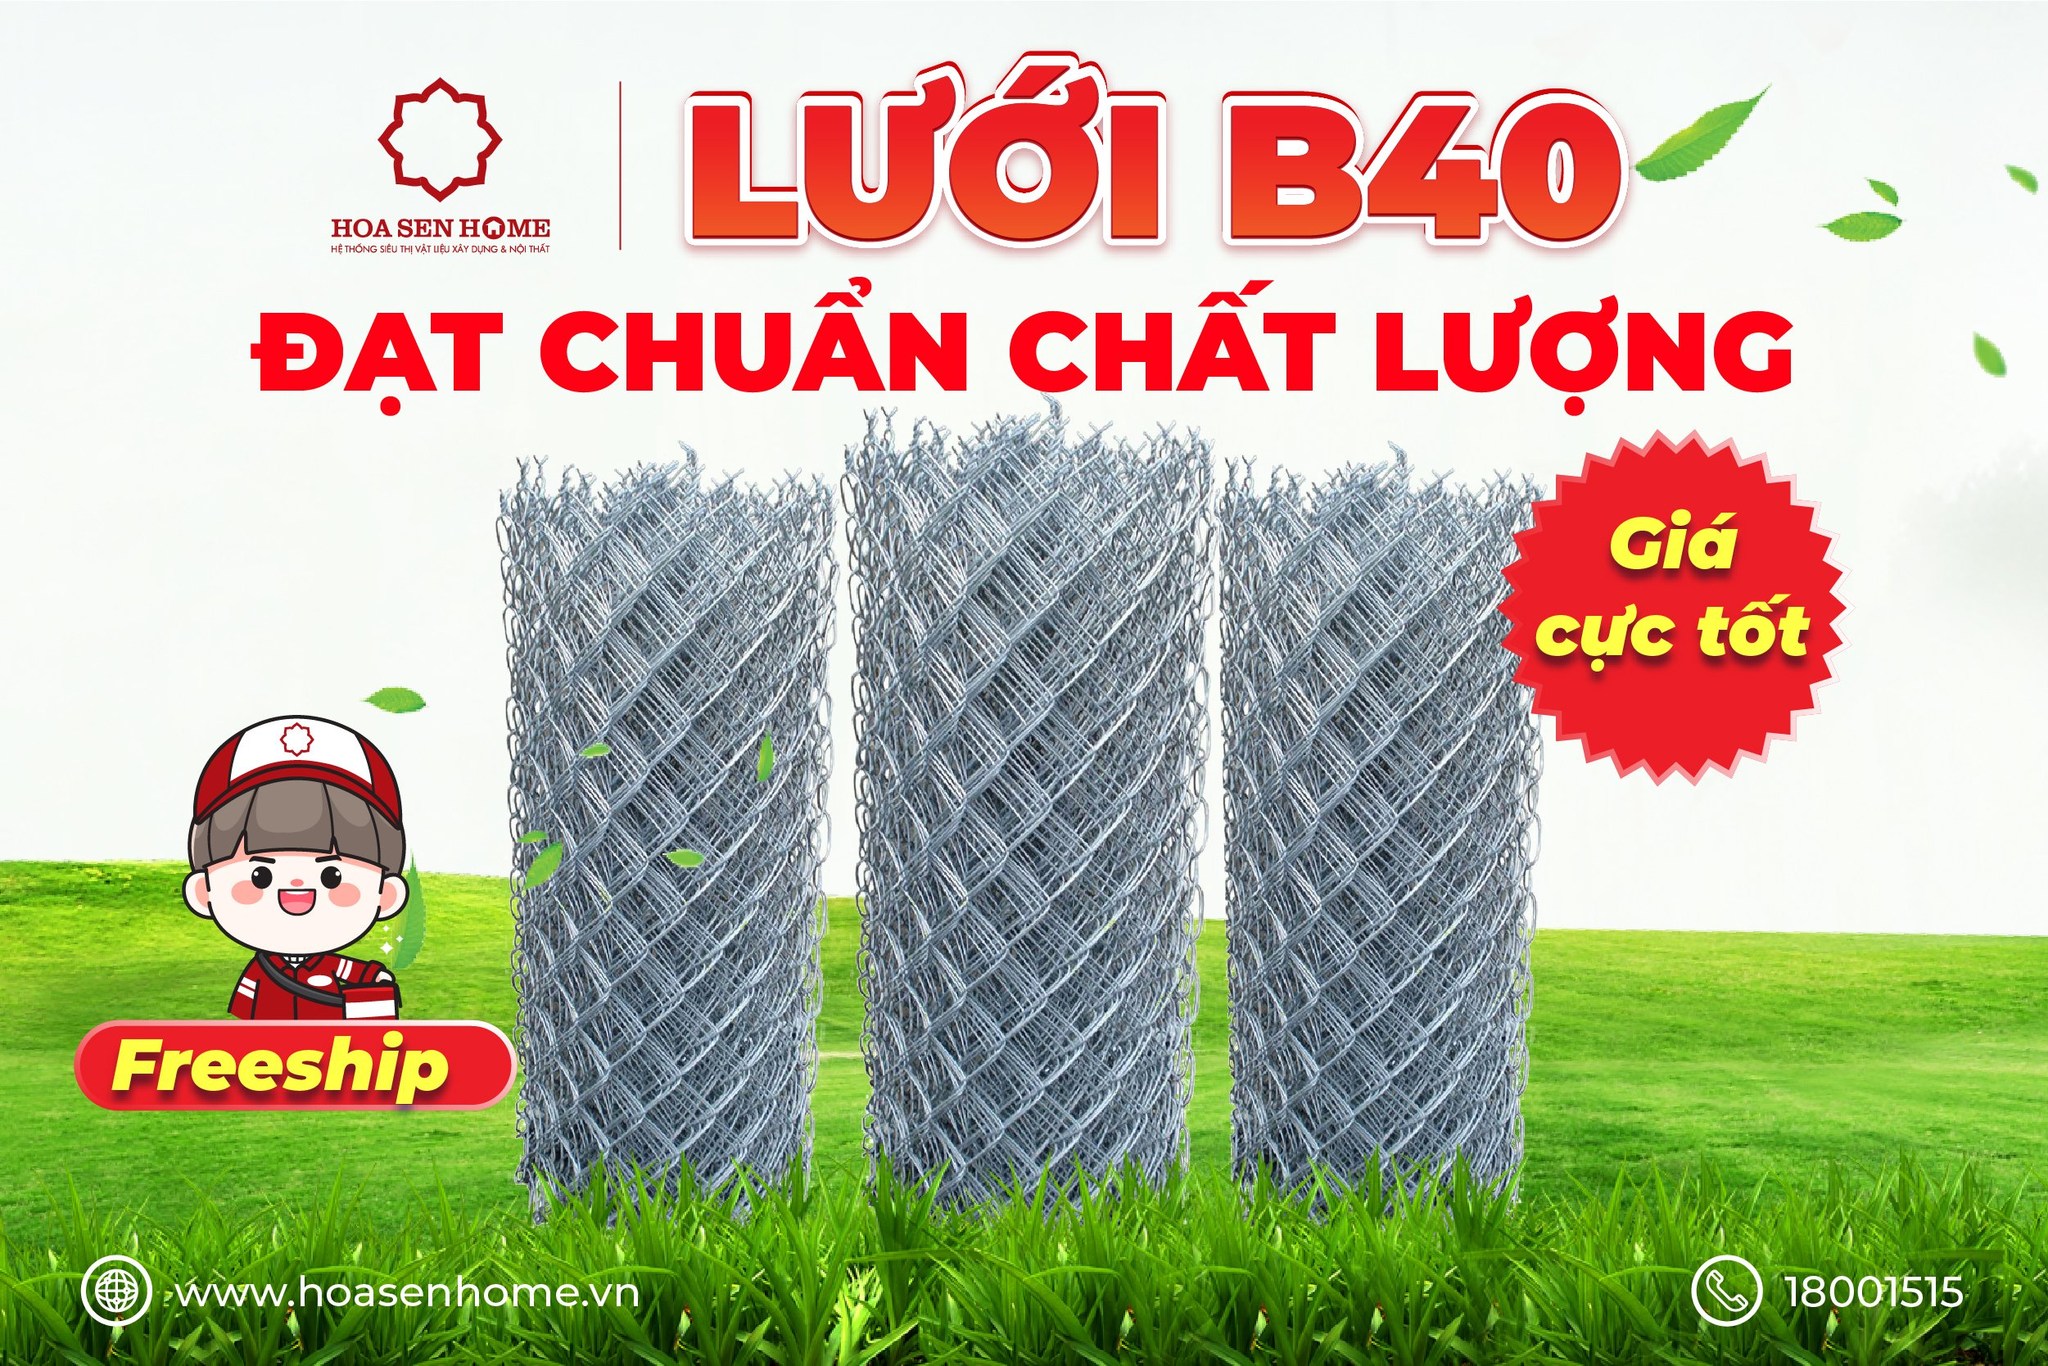 luoi-b40-dat-chuan-chat-luong-gia-cuc-t